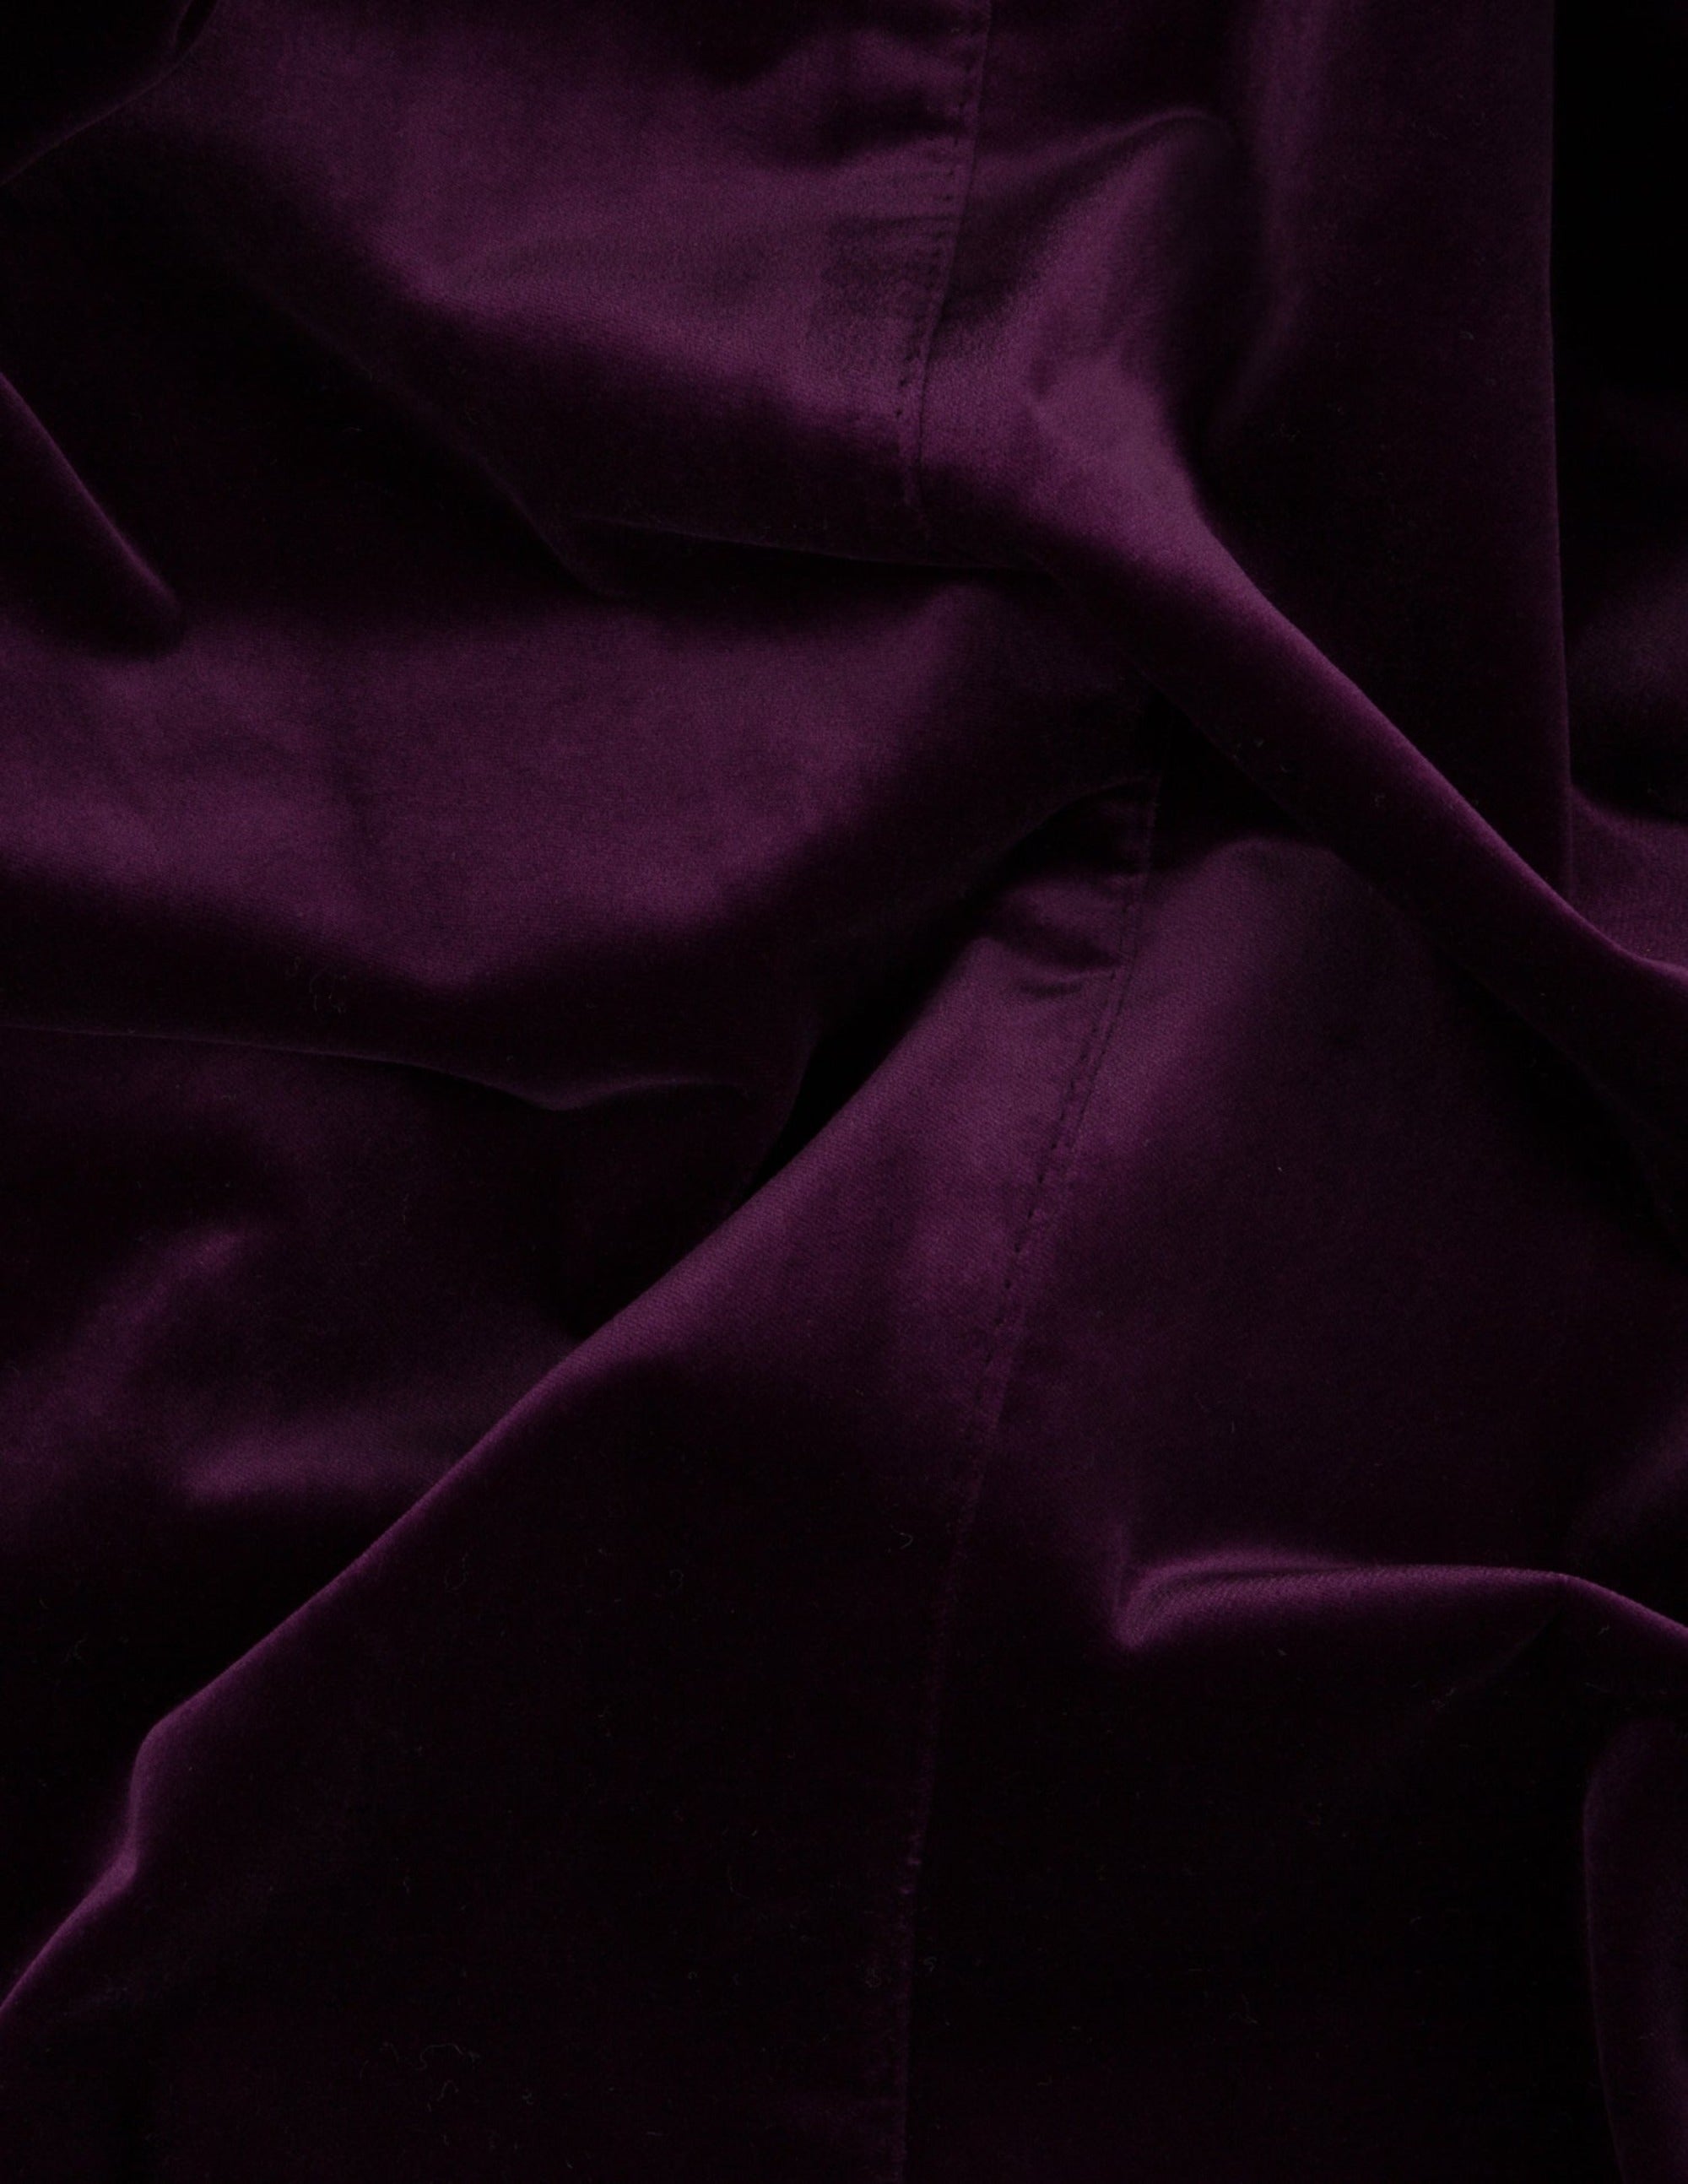 Purple Velvet Single Breasted Jacket - Samir Bachkami